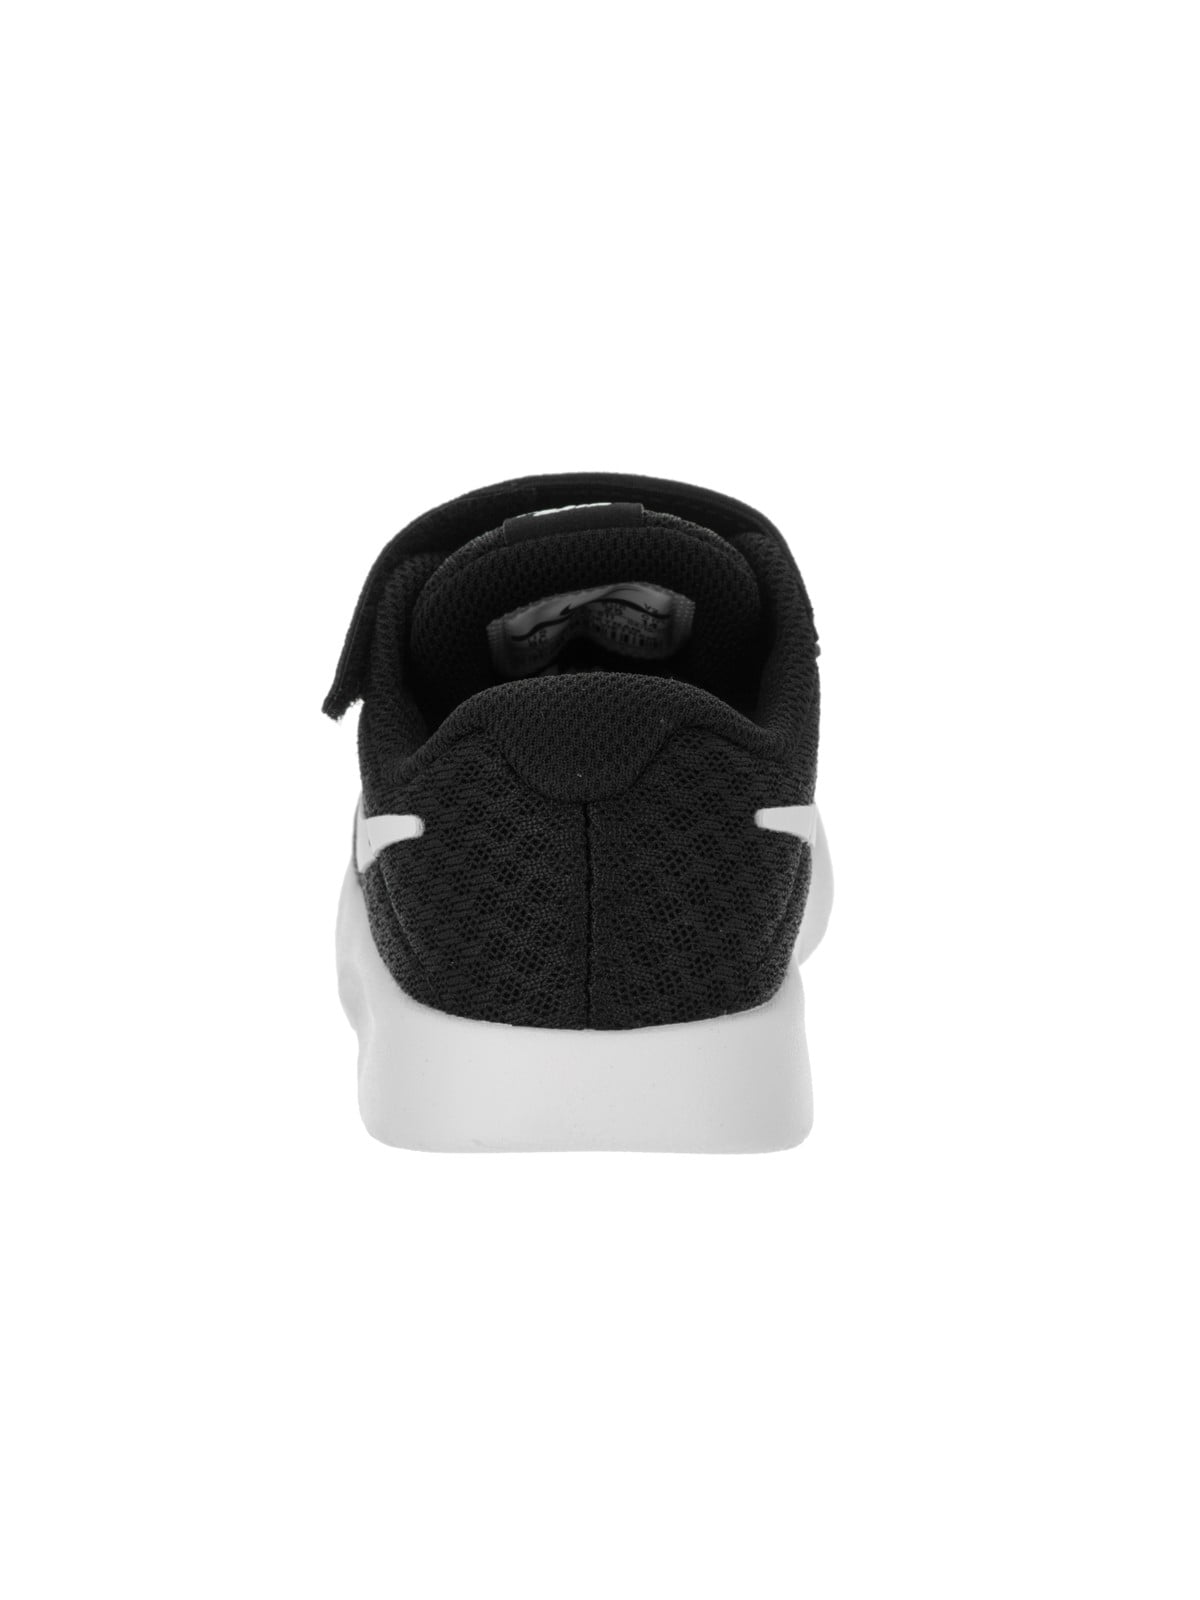 Nike 818383-011: Tanjun Infant/Toddler Black White Sneakers (10 M US Toddler, Black/White-white)